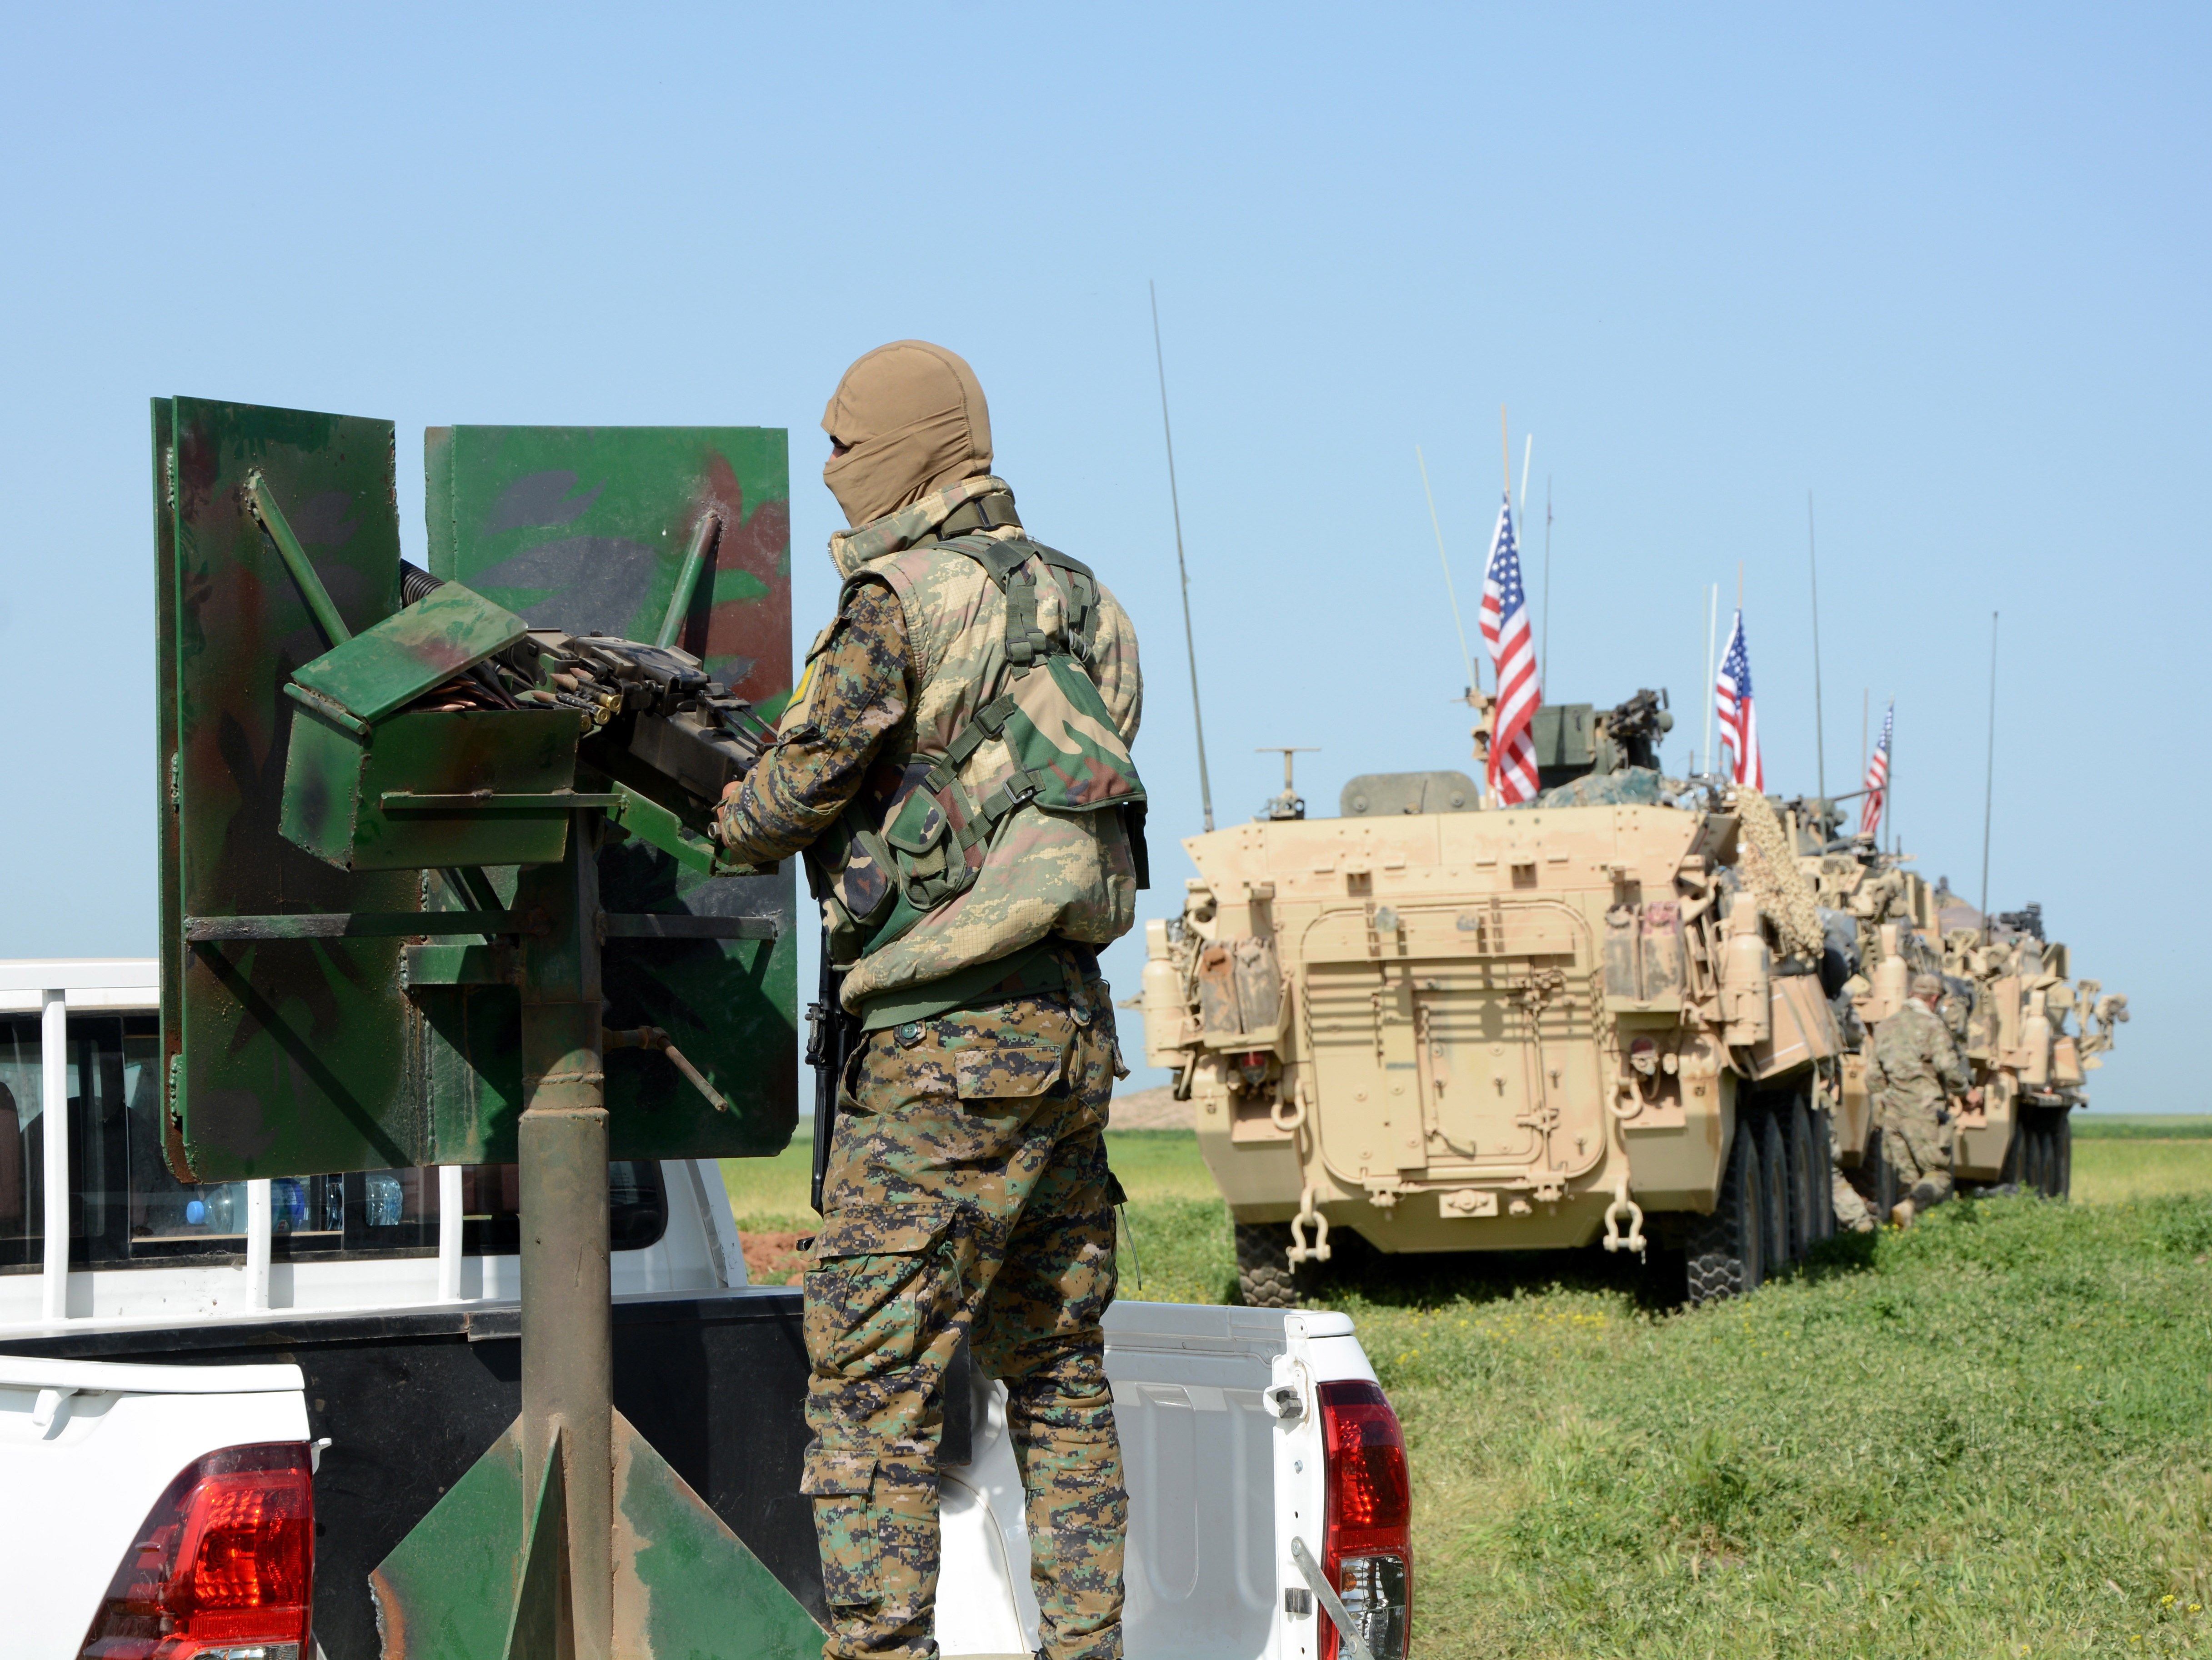 EEUU enviará 750 soldados a Medio Oriente tras ataque a su embajada en Irak